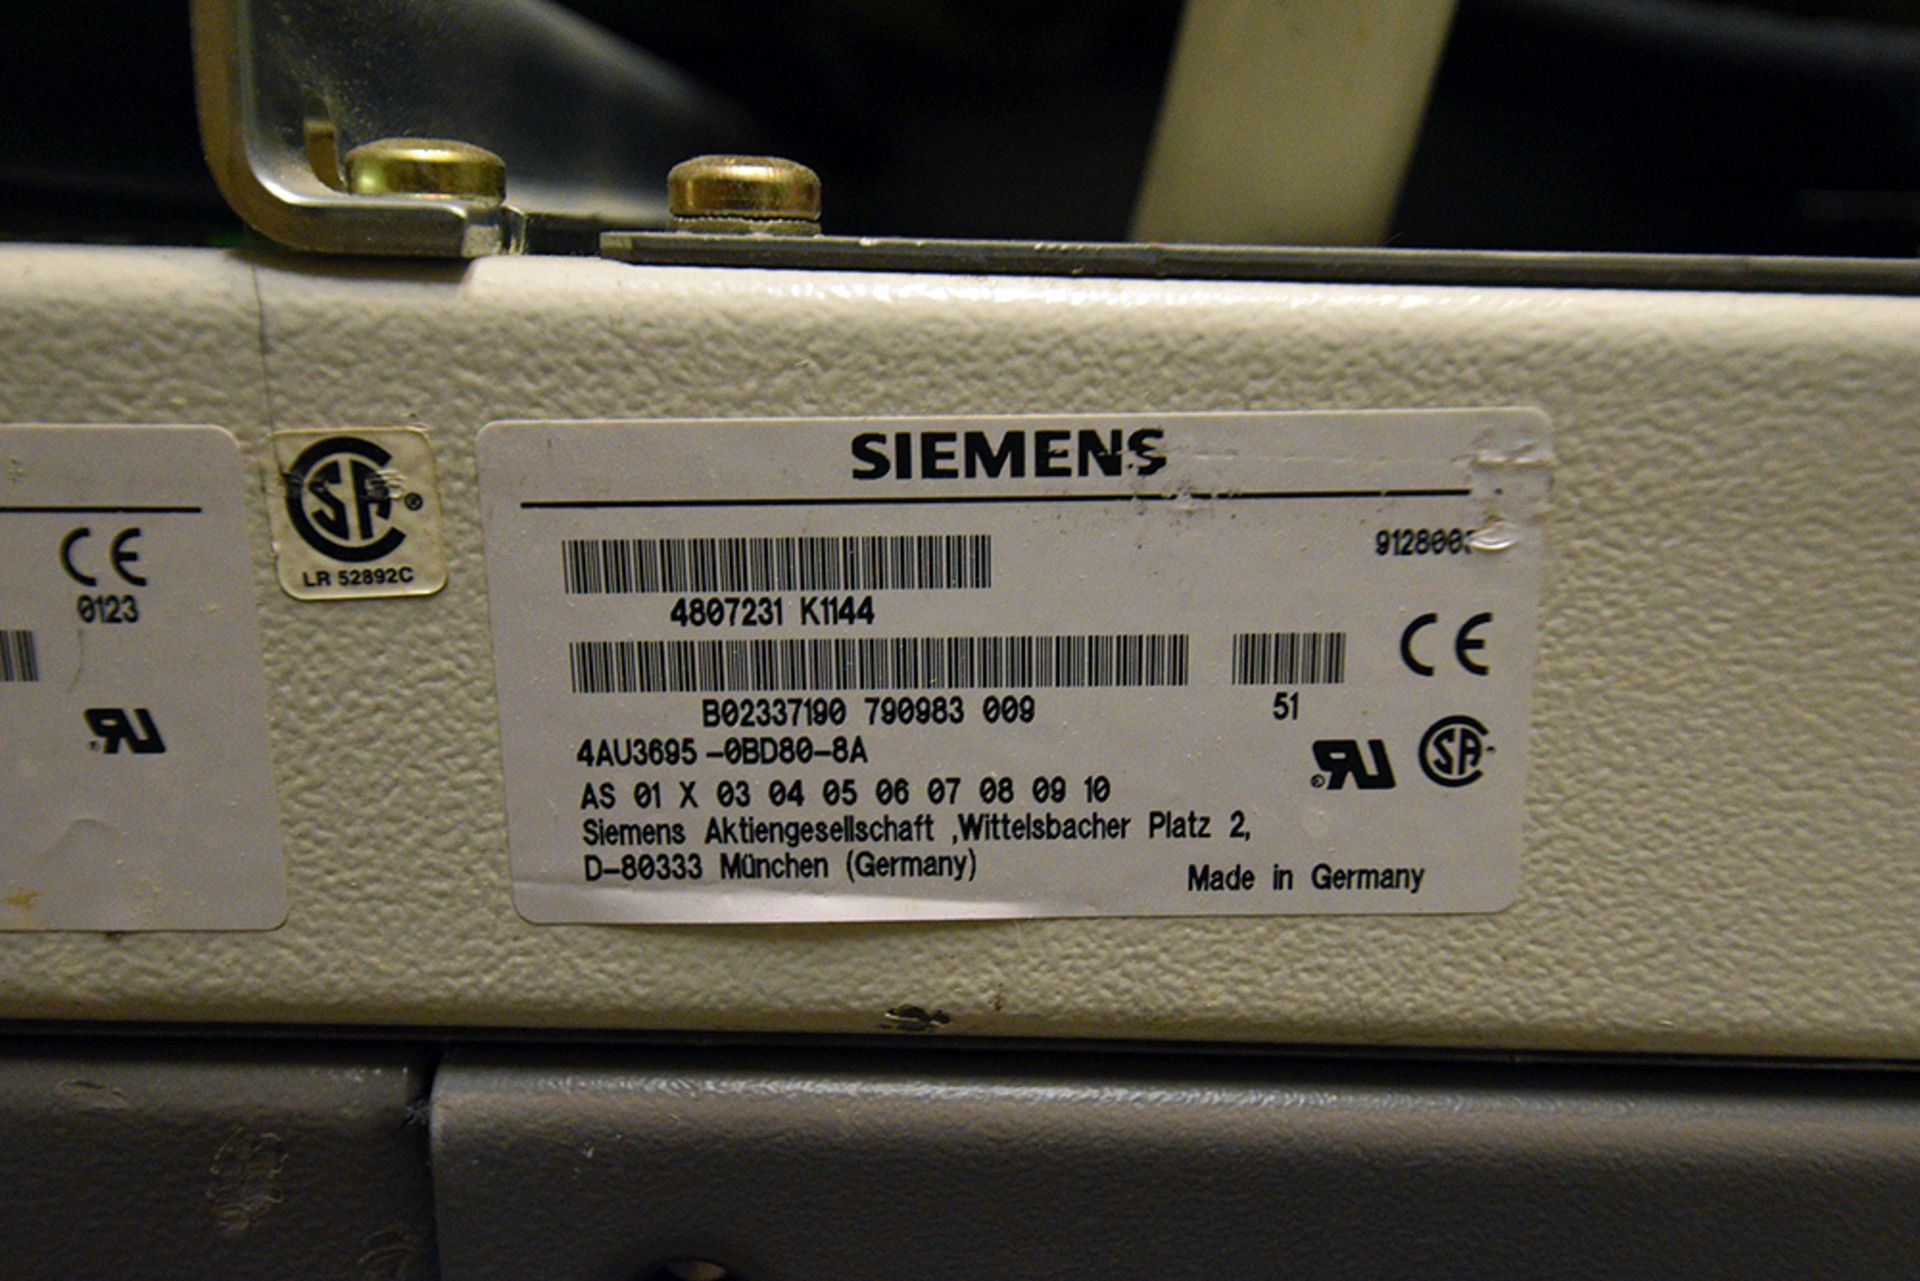 Siemens CT Scanner - Image 45 of 48